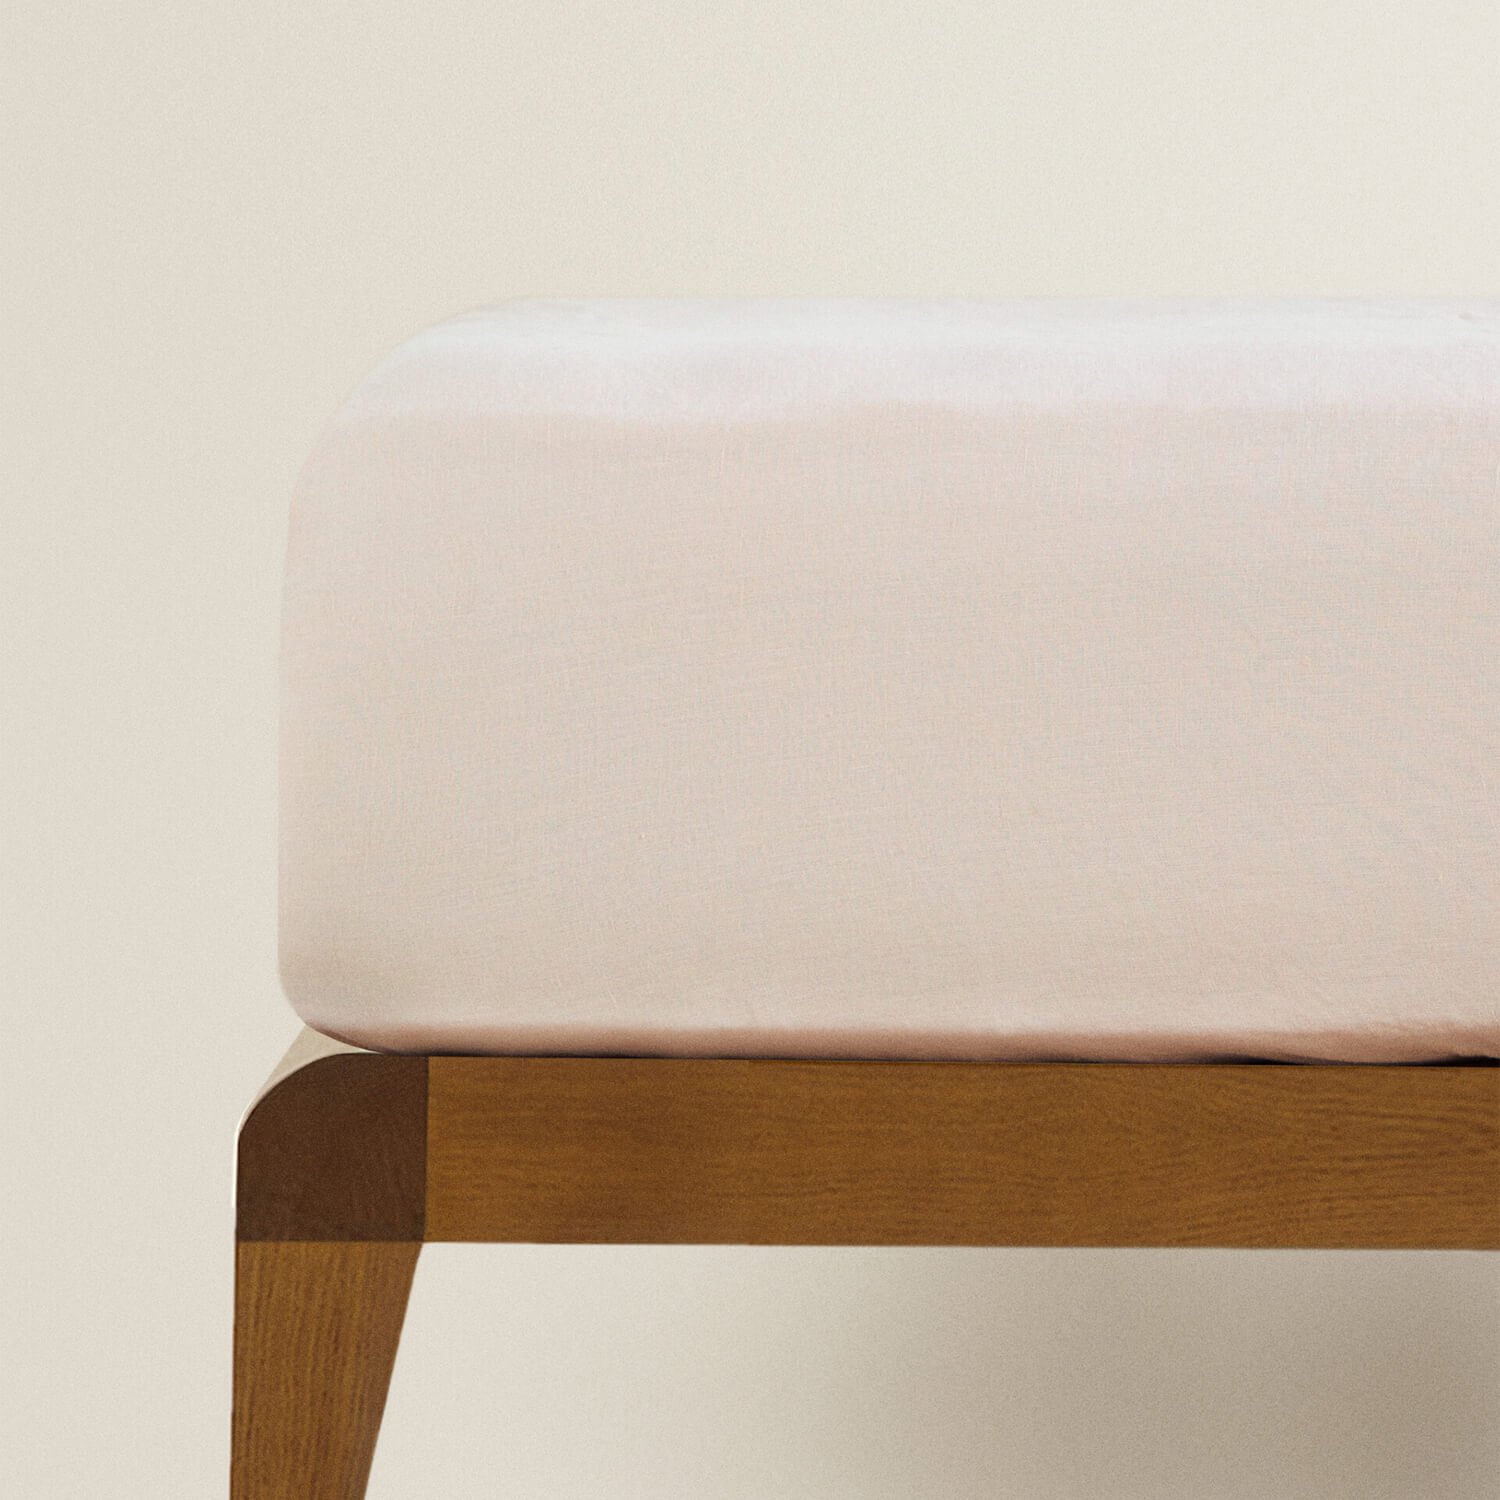 Простыня на резинке Zara Home Children’s Washed Linen, розовый простыня однотонная из стираного льна 150 x 250 см зеленый